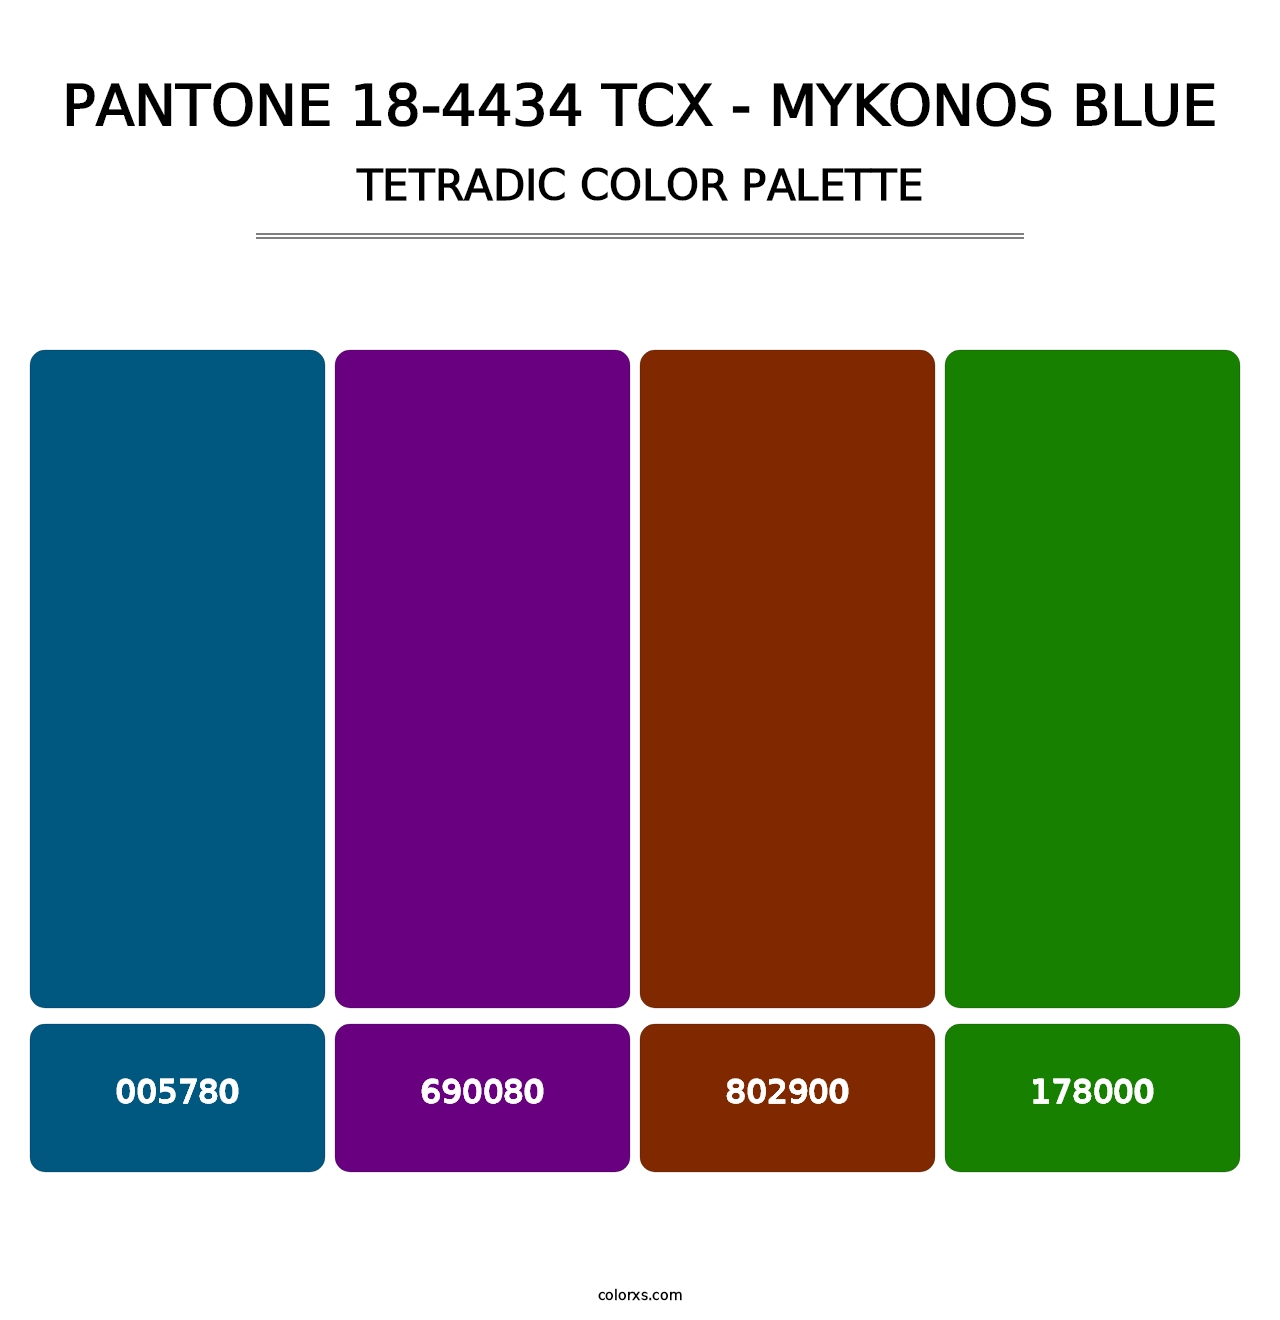 PANTONE 18-4434 TCX - Mykonos Blue - Tetradic Color Palette